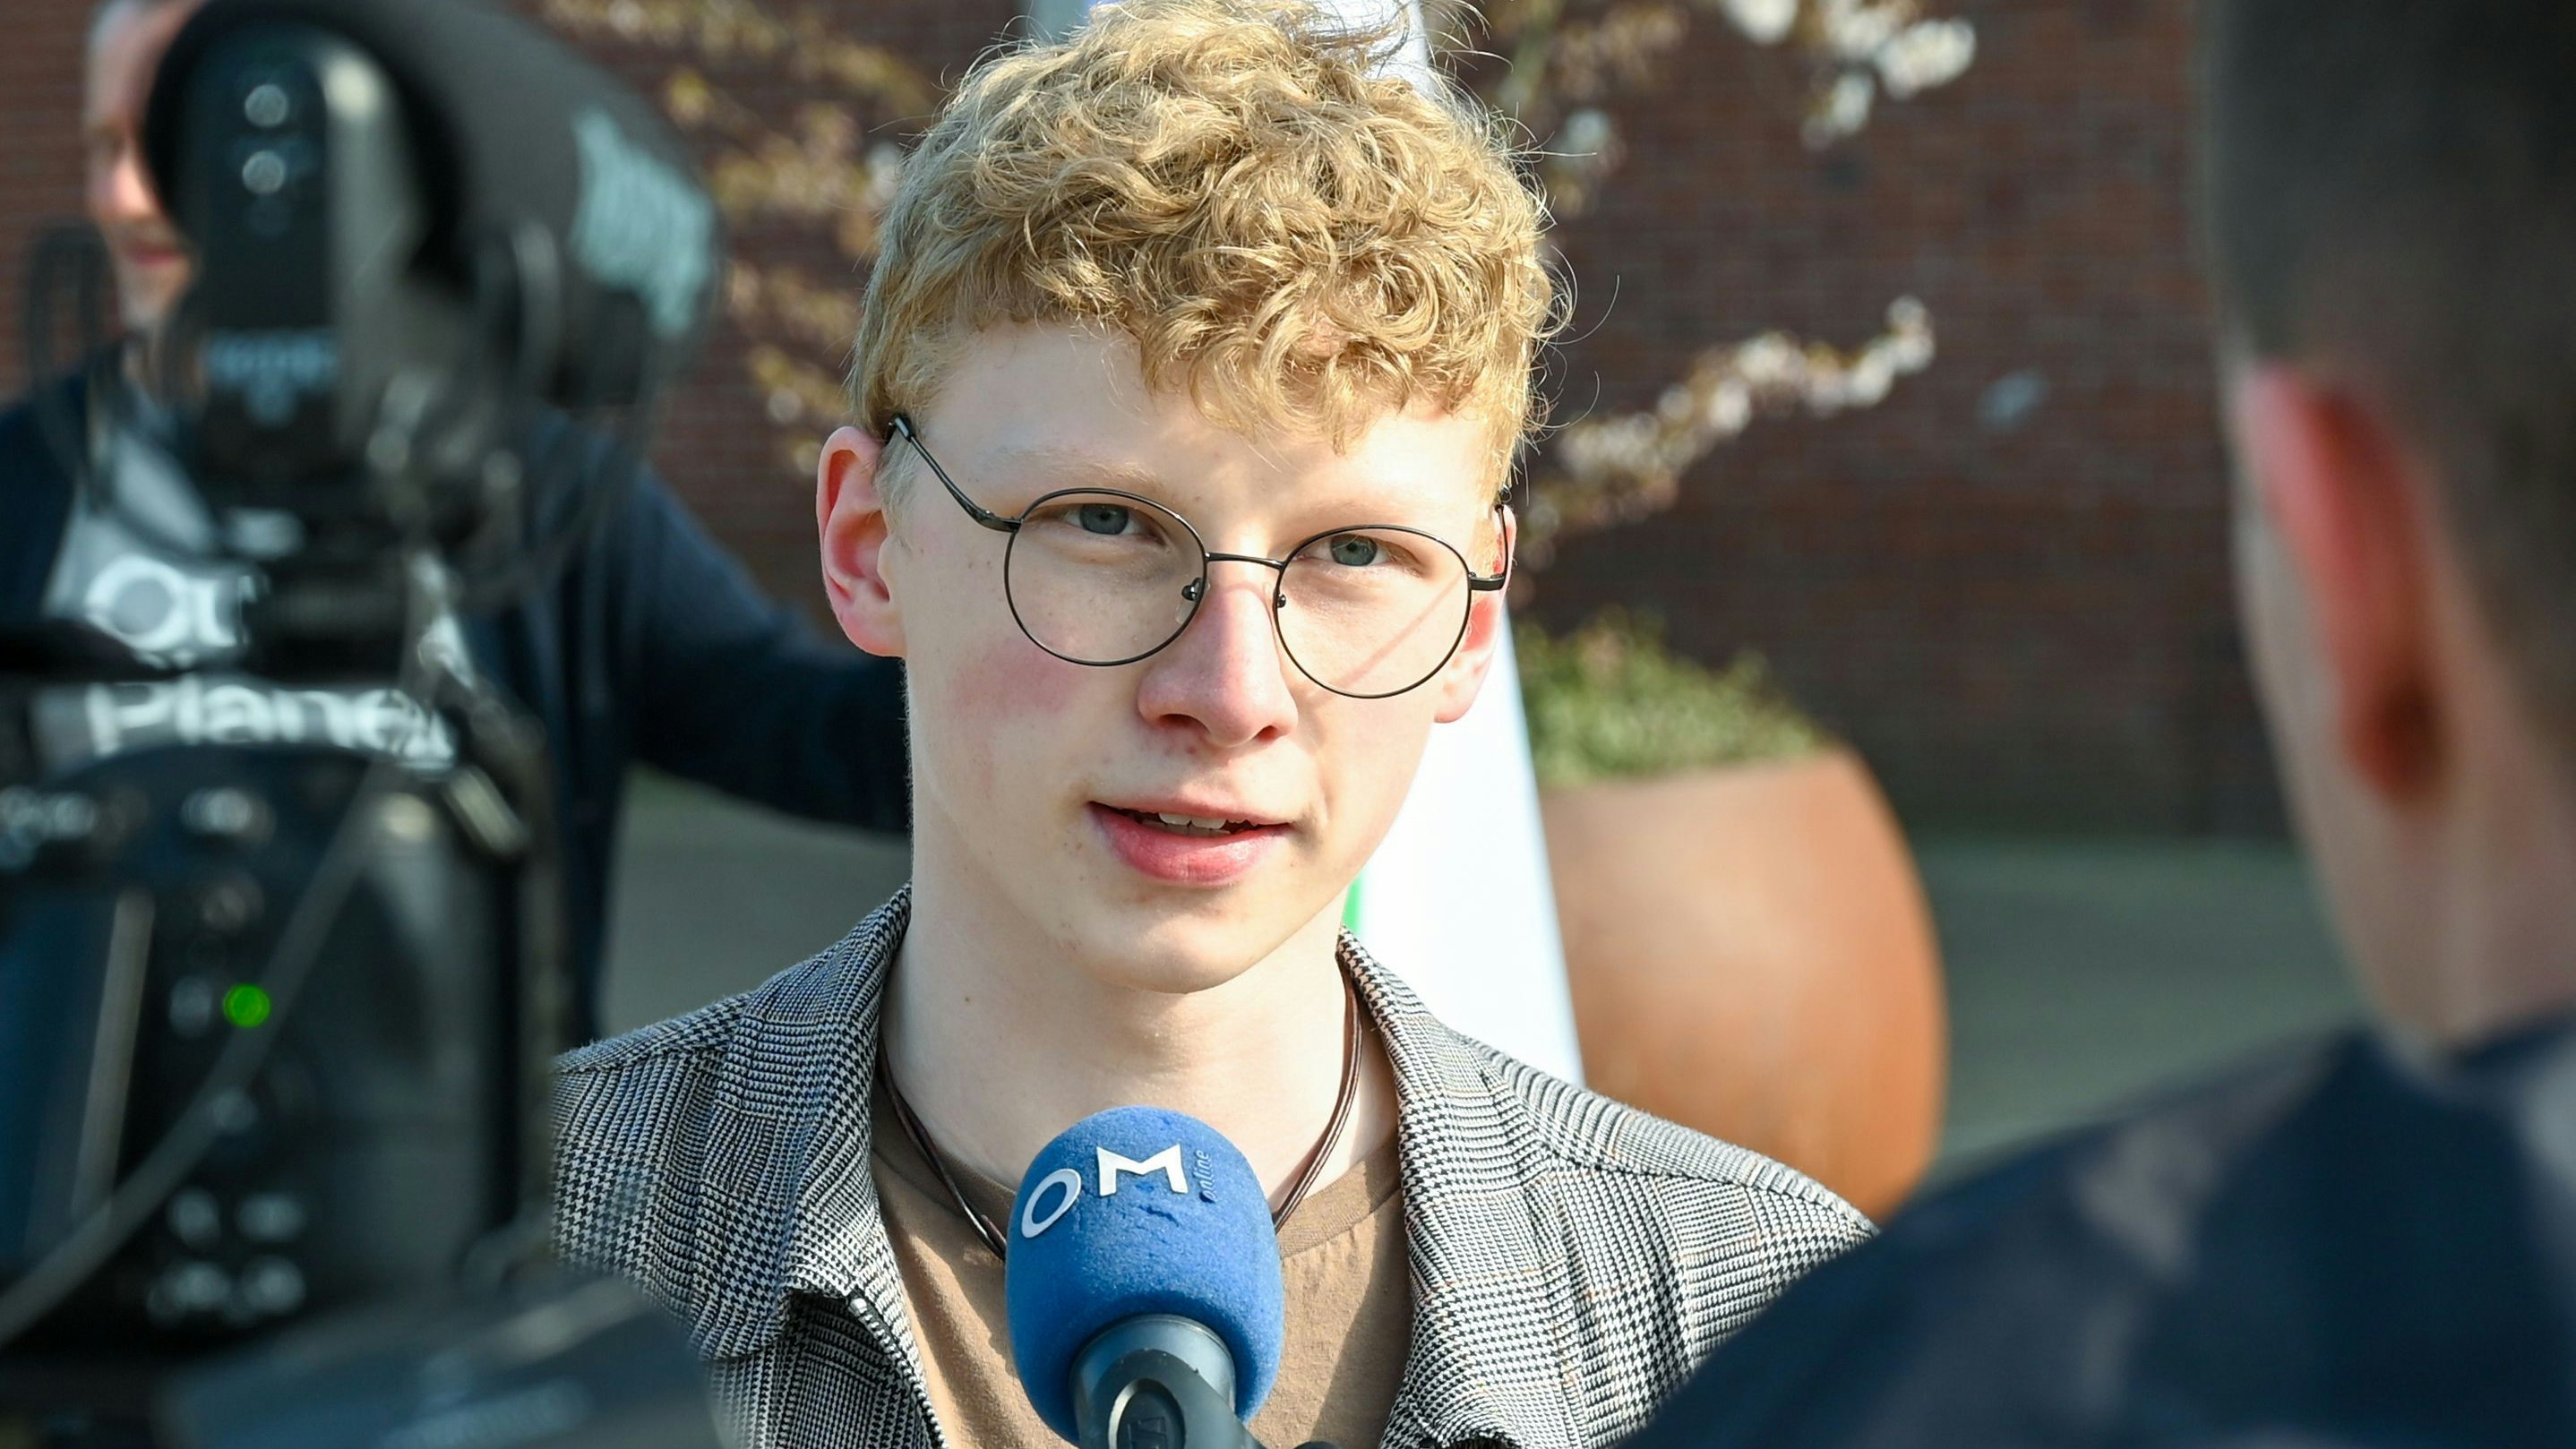 Jüngestes Kreistagsmitglied in Cloppenburg: Nils Wolke ist Abgeordneter der Grünen. Foto: Hermes